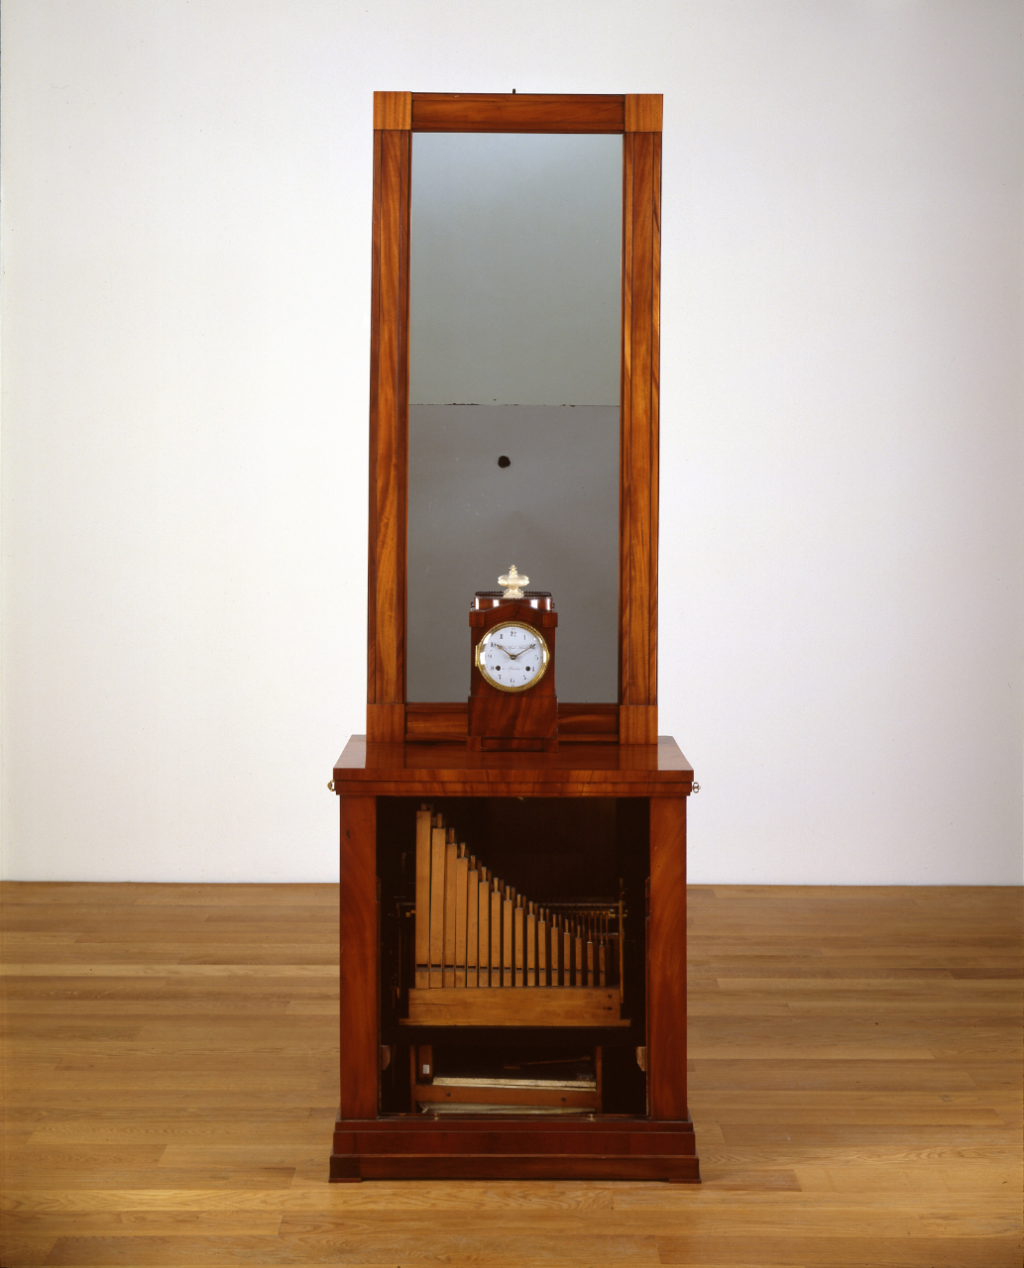 Armadio a specchio con orologio a flauto, Berlino, 1800 circa, MMA-71760